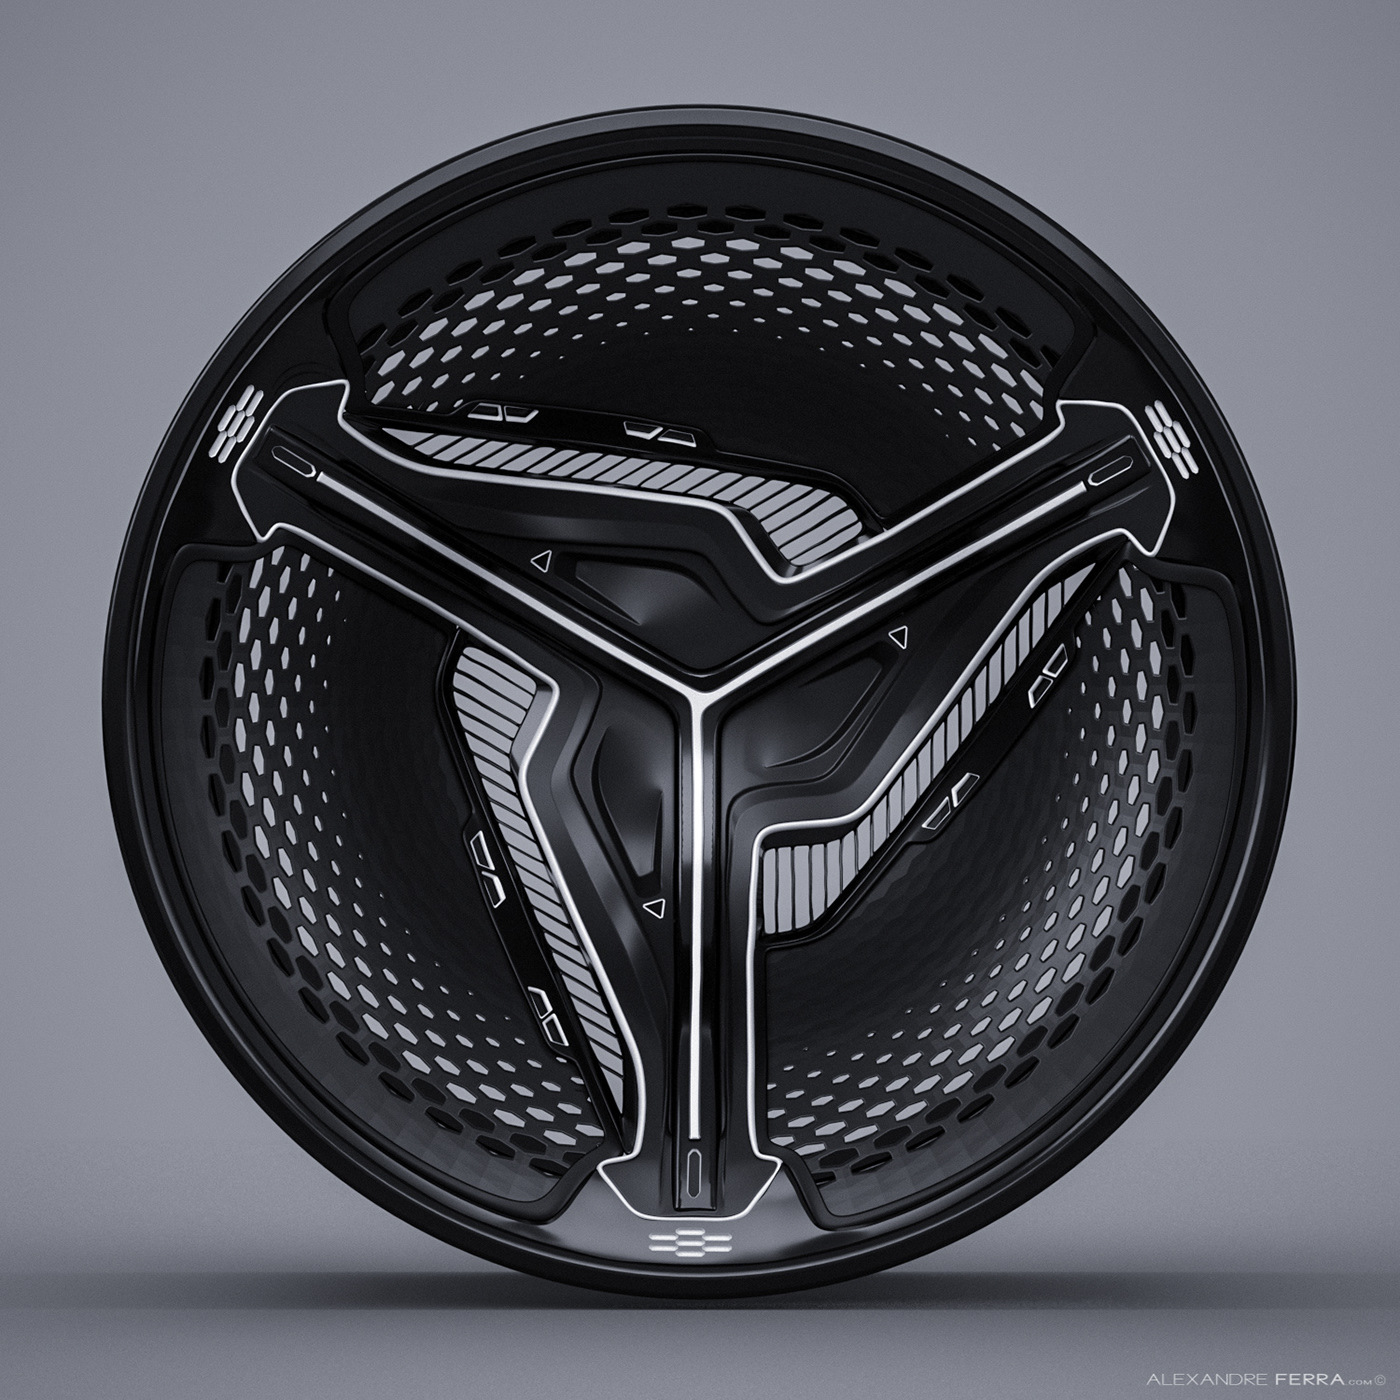 car wheel Tire rim concept design automotive   Rims wheels series